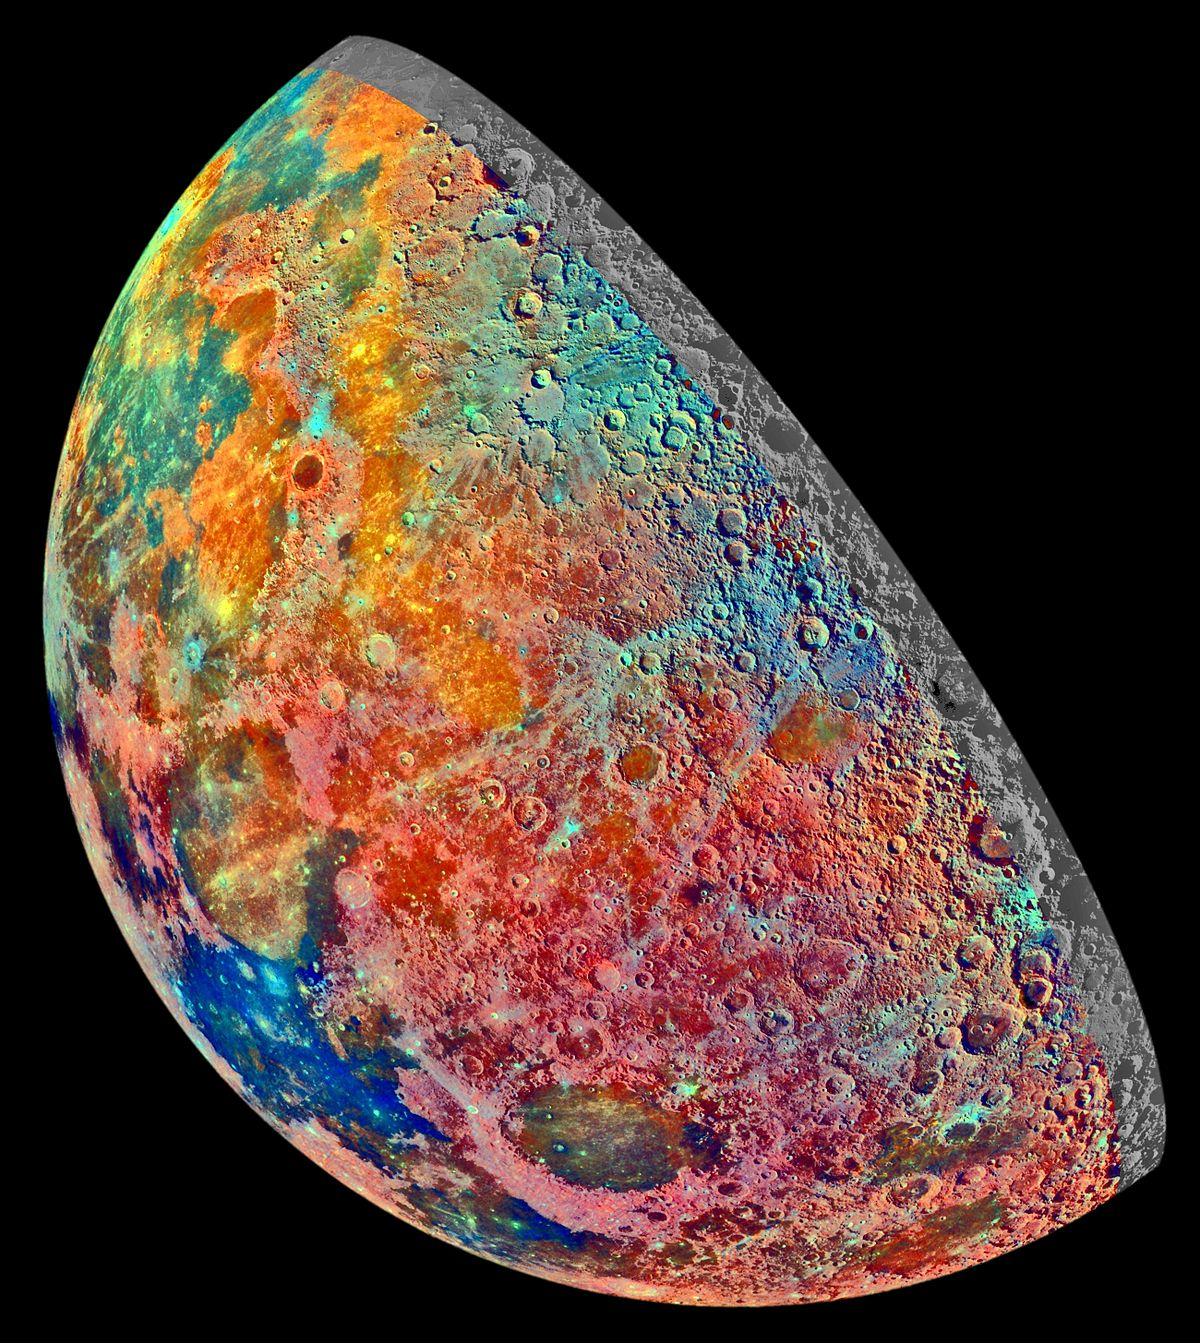 Искусственно окрашенная мозаика, построенная из 53 изображений, снятых через три спектральных фильтра системой визуализации Галилео, когда космический корабль пролетал над северными областями Луны 7 декабря 1992 года. Цветами обозначены разные материалы.
